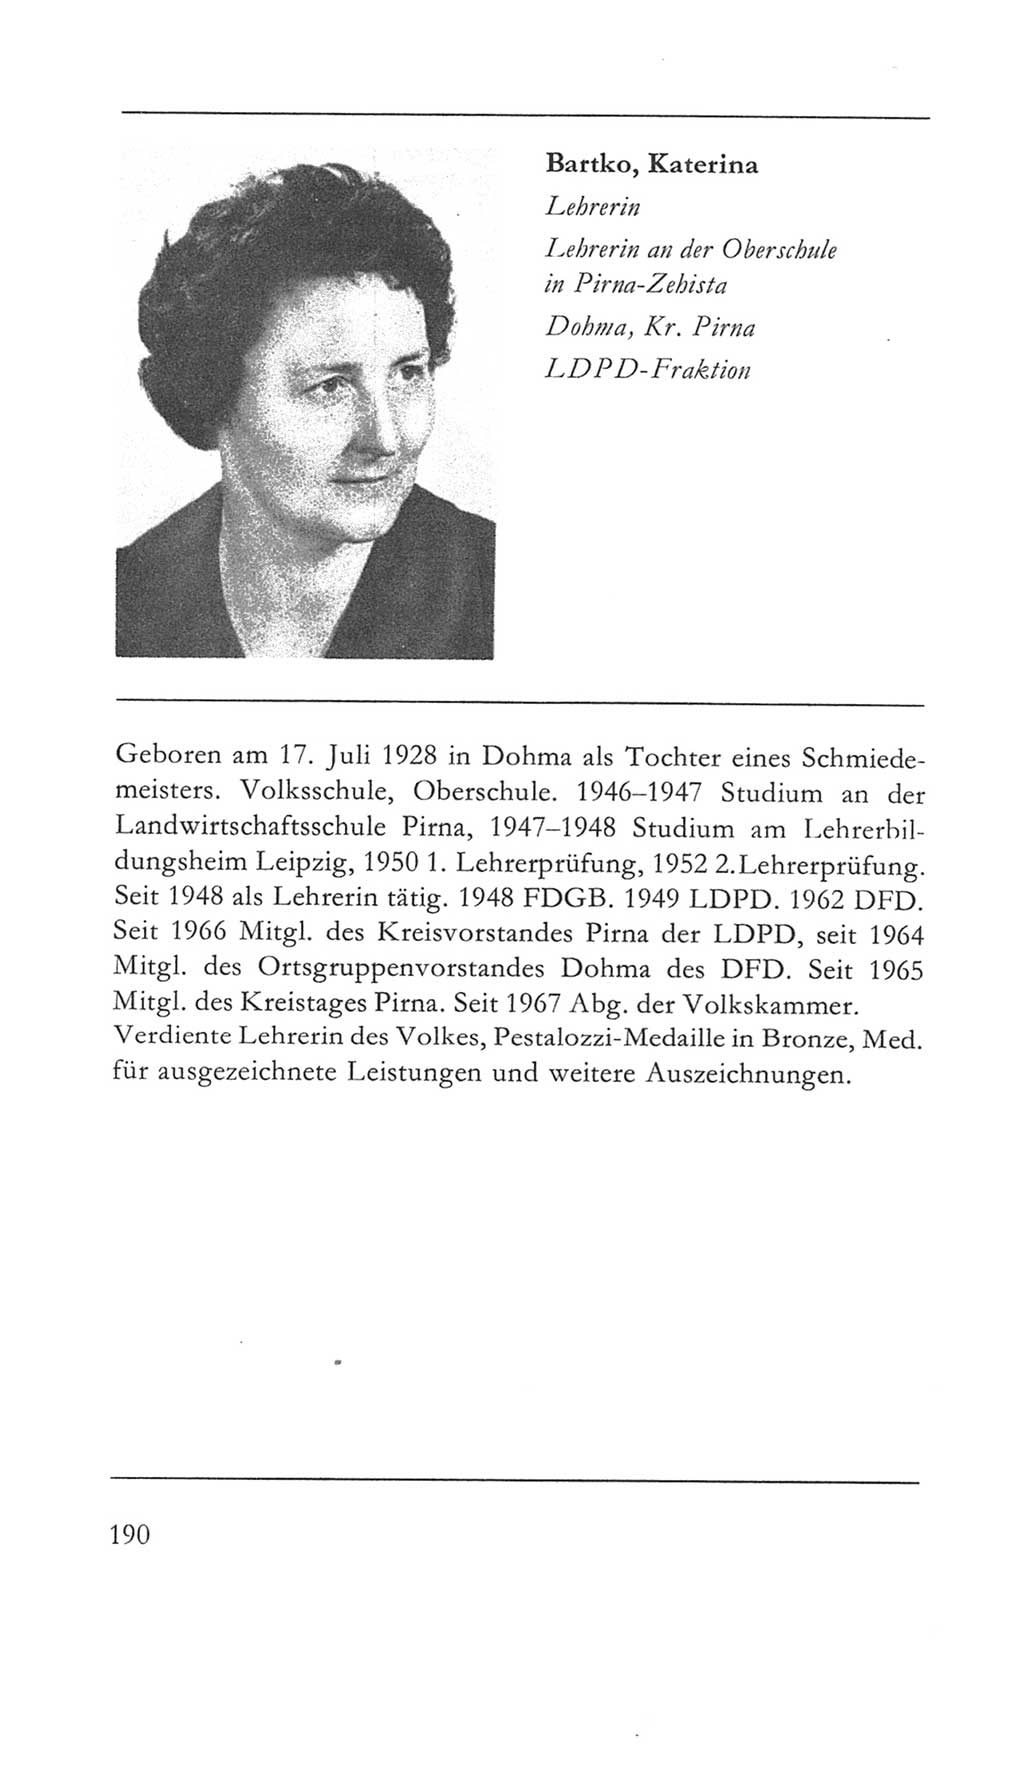 Volkskammer (VK) der Deutschen Demokratischen Republik (DDR) 5. Wahlperiode 1967-1971, Seite 190 (VK. DDR 5. WP. 1967-1971, S. 190)